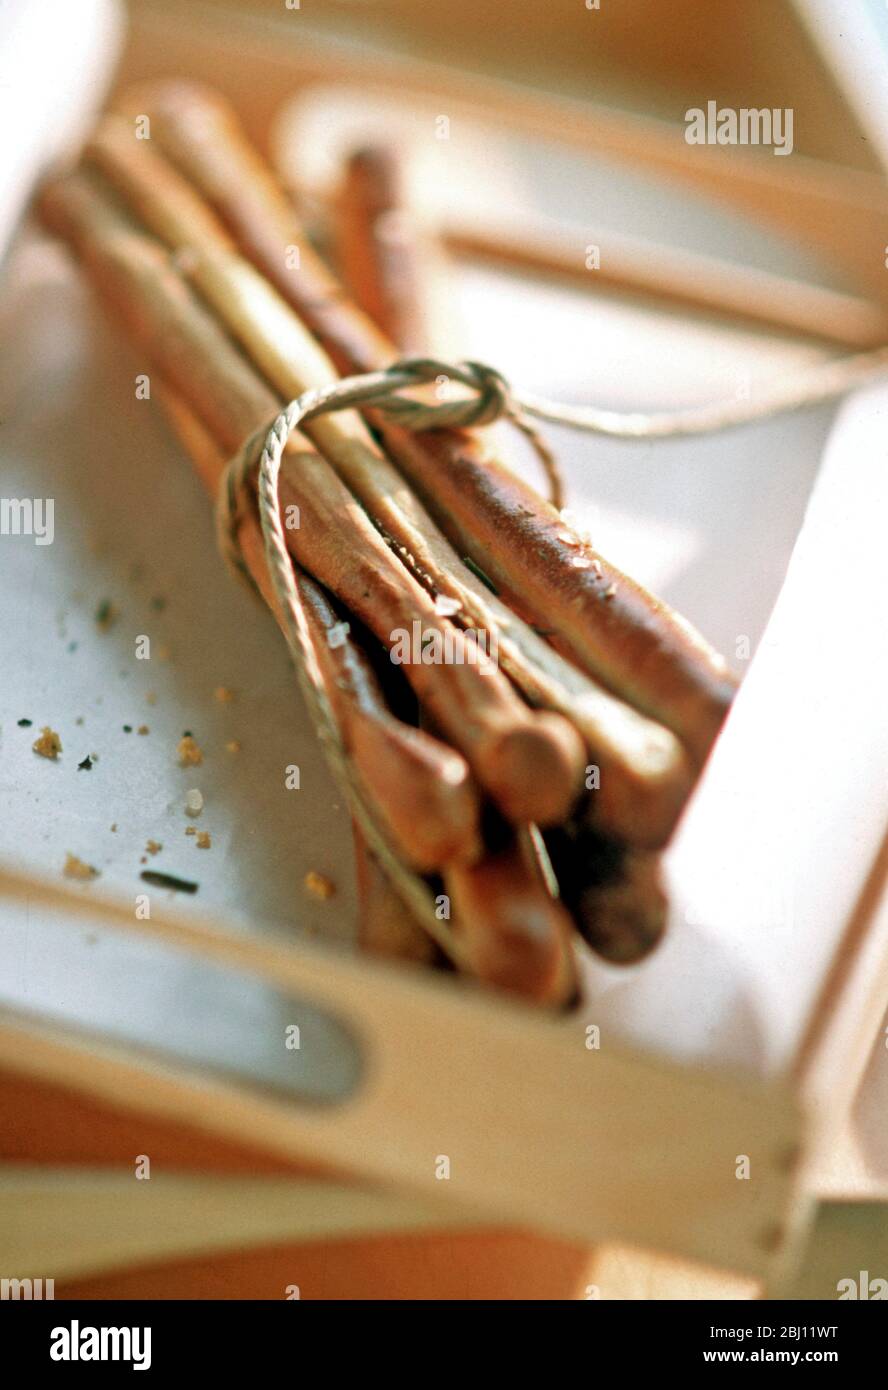 Bündel von hausgemachten Brotstangen auf Holztablett - Stockfoto